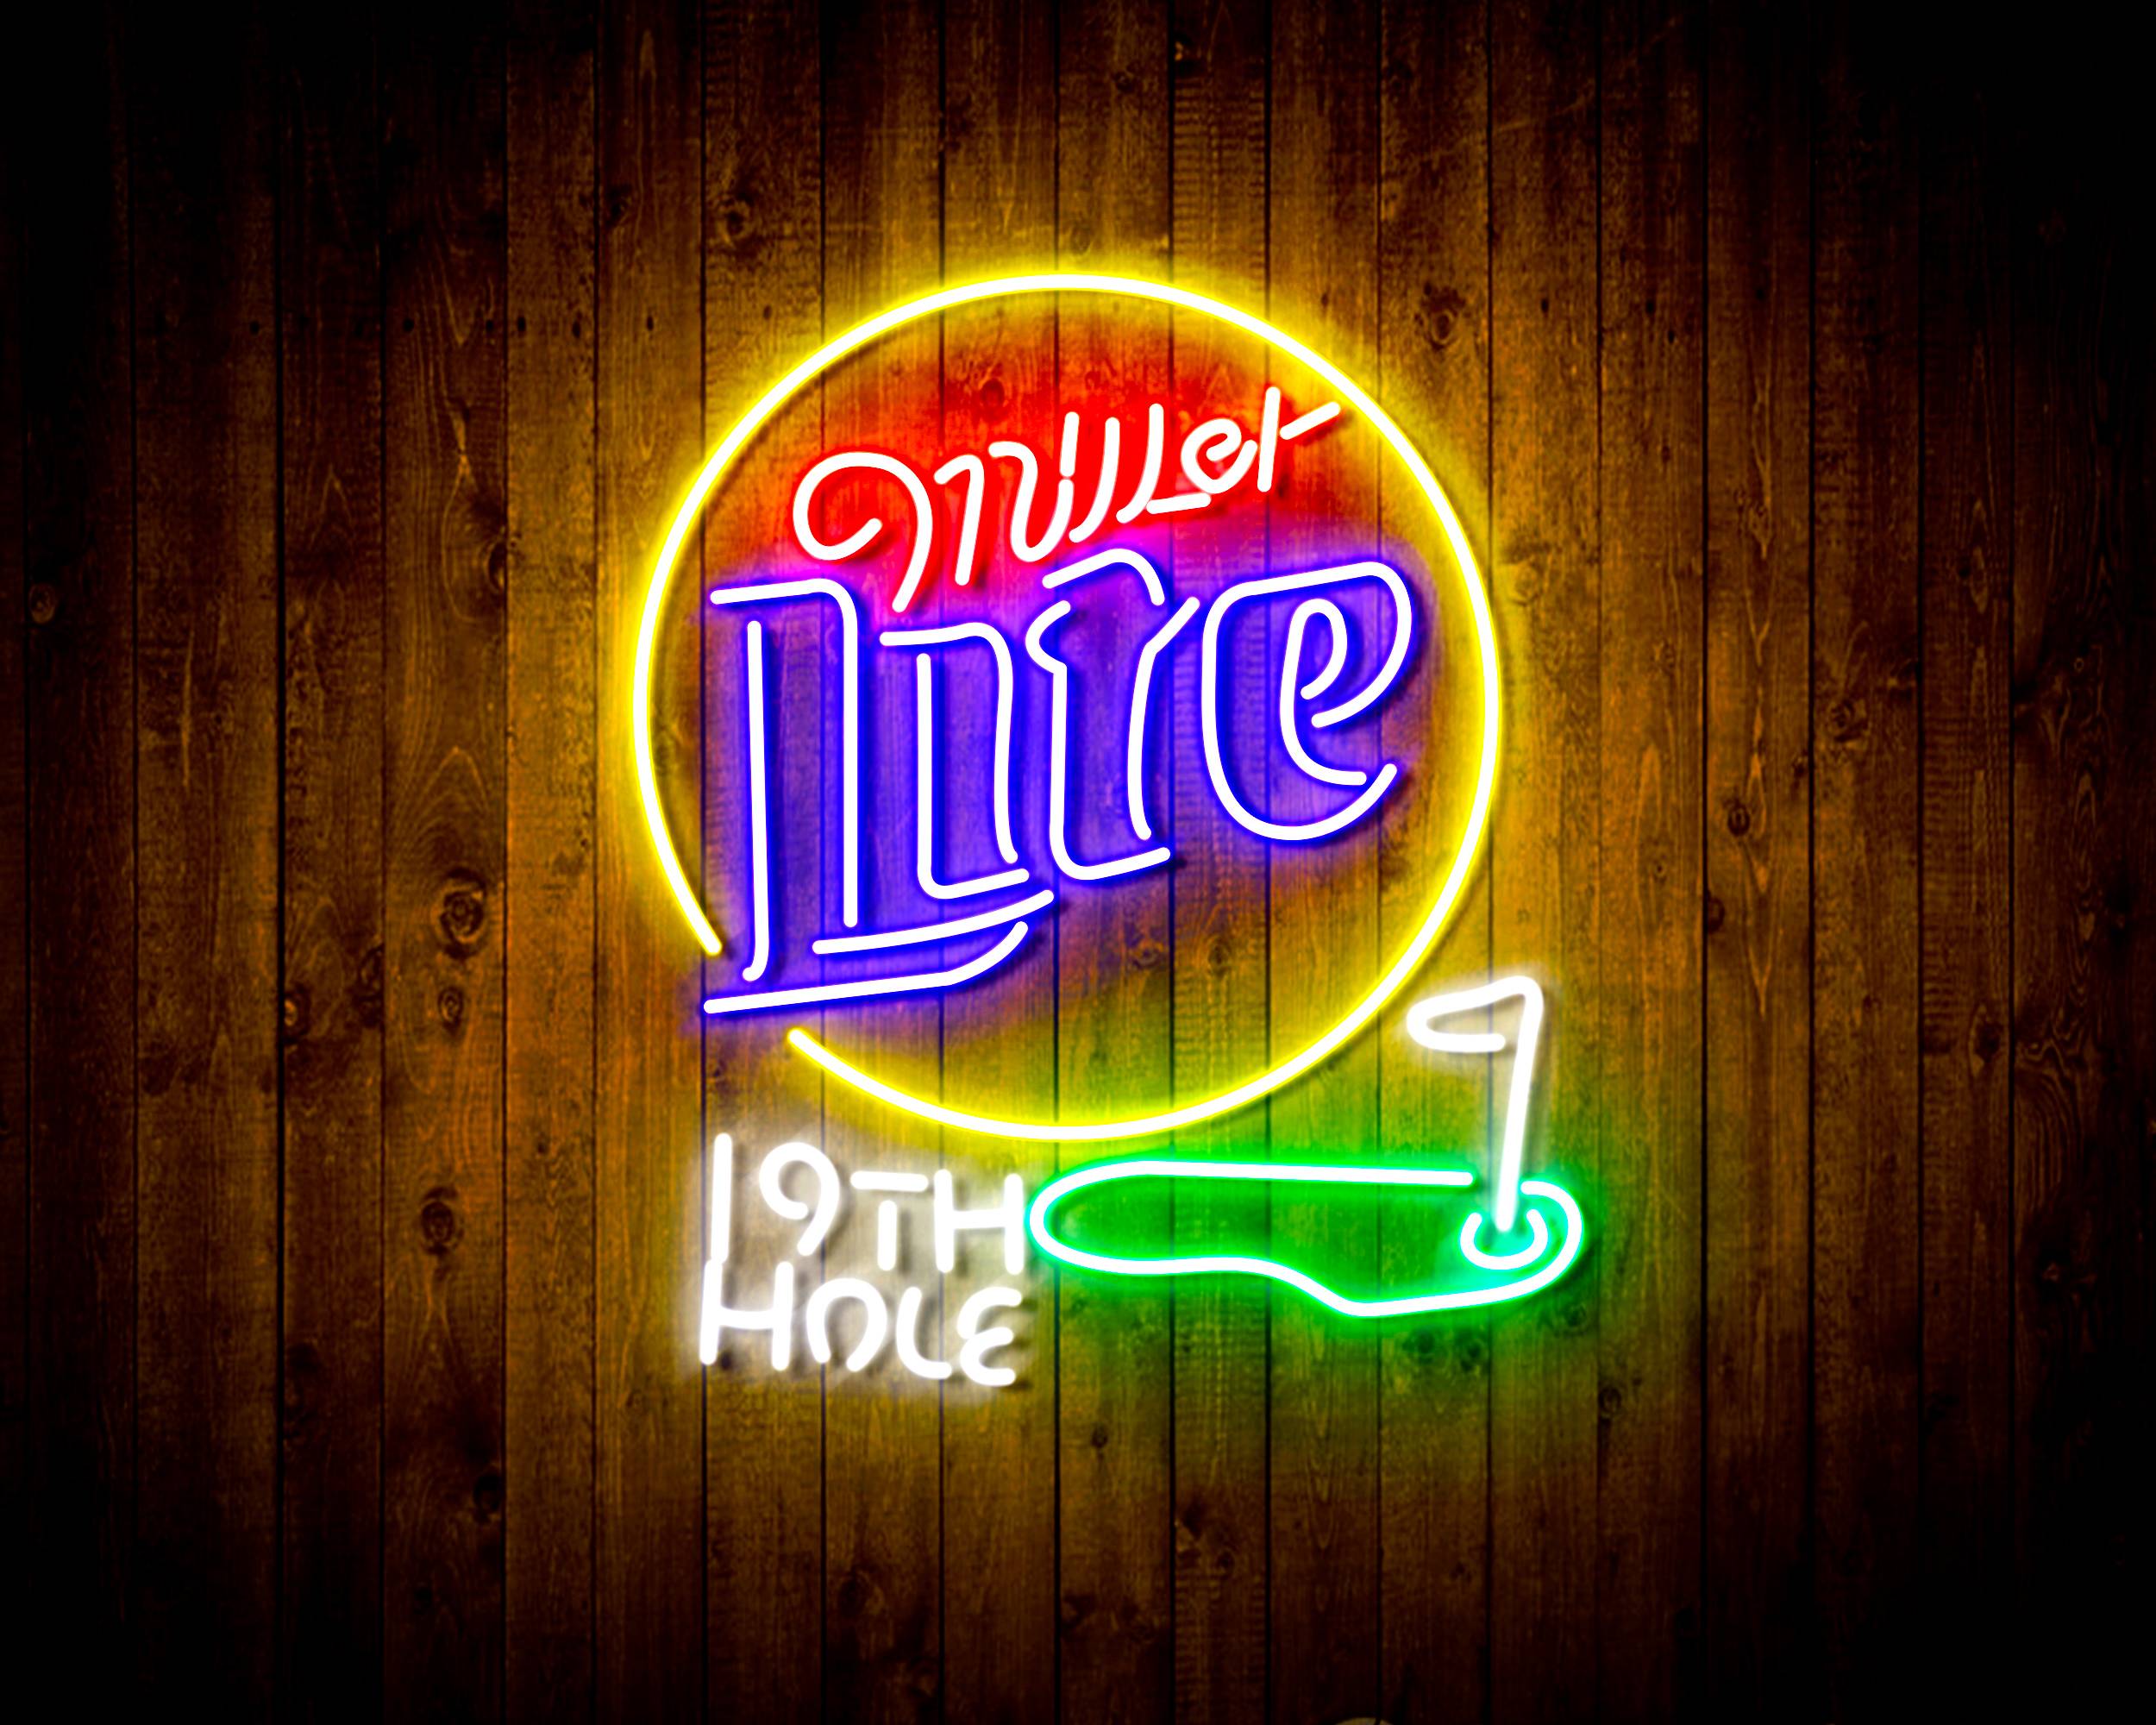 Miller Lite 19th Hole Handmade LED Neon Light Sign